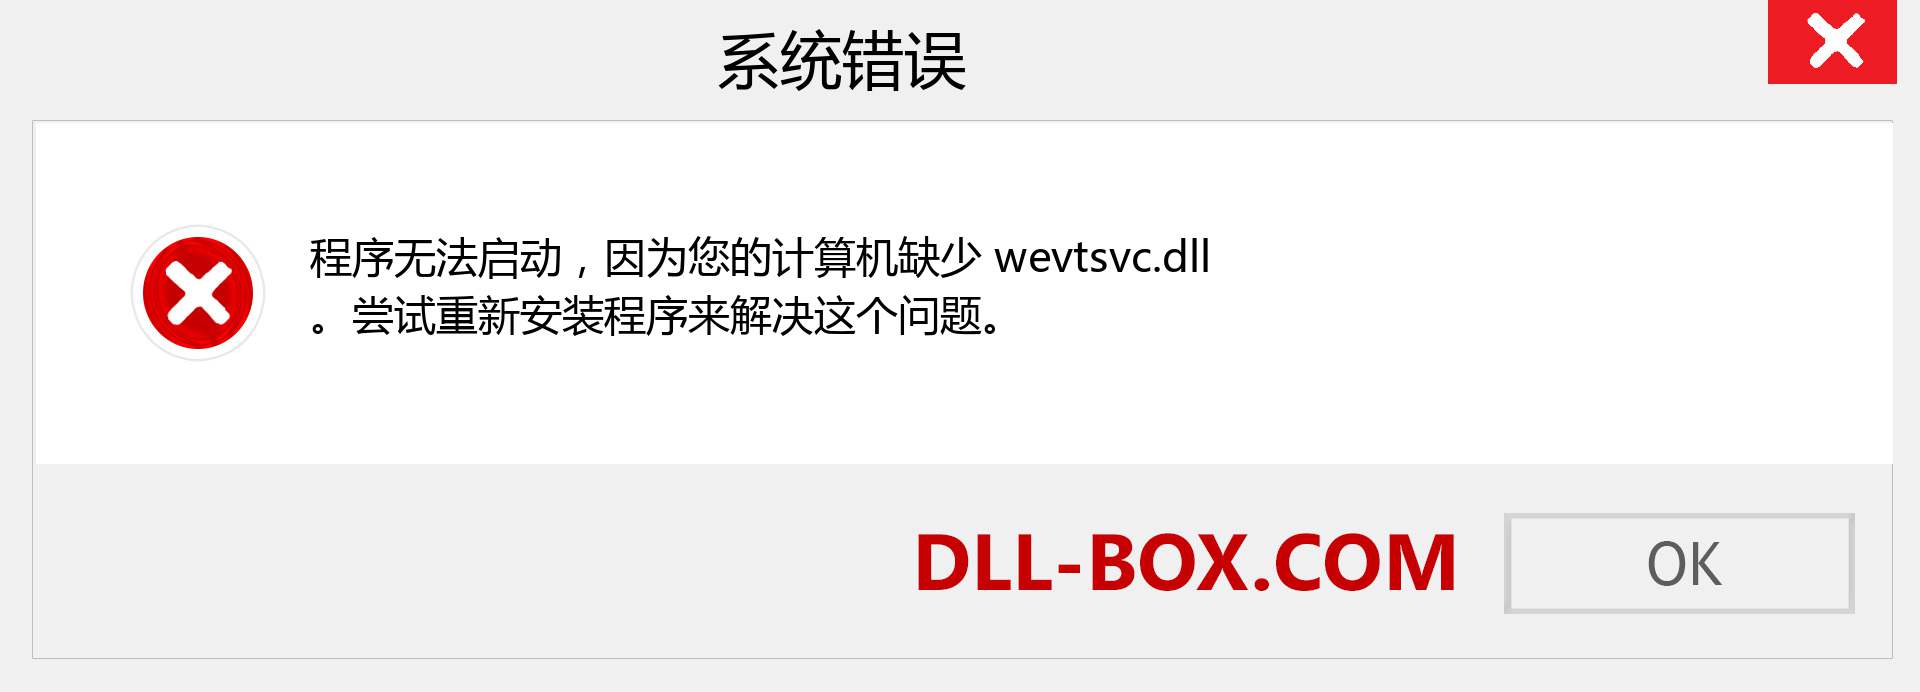 wevtsvc.dll 文件丢失？。 适用于 Windows 7、8、10 的下载 - 修复 Windows、照片、图像上的 wevtsvc dll 丢失错误